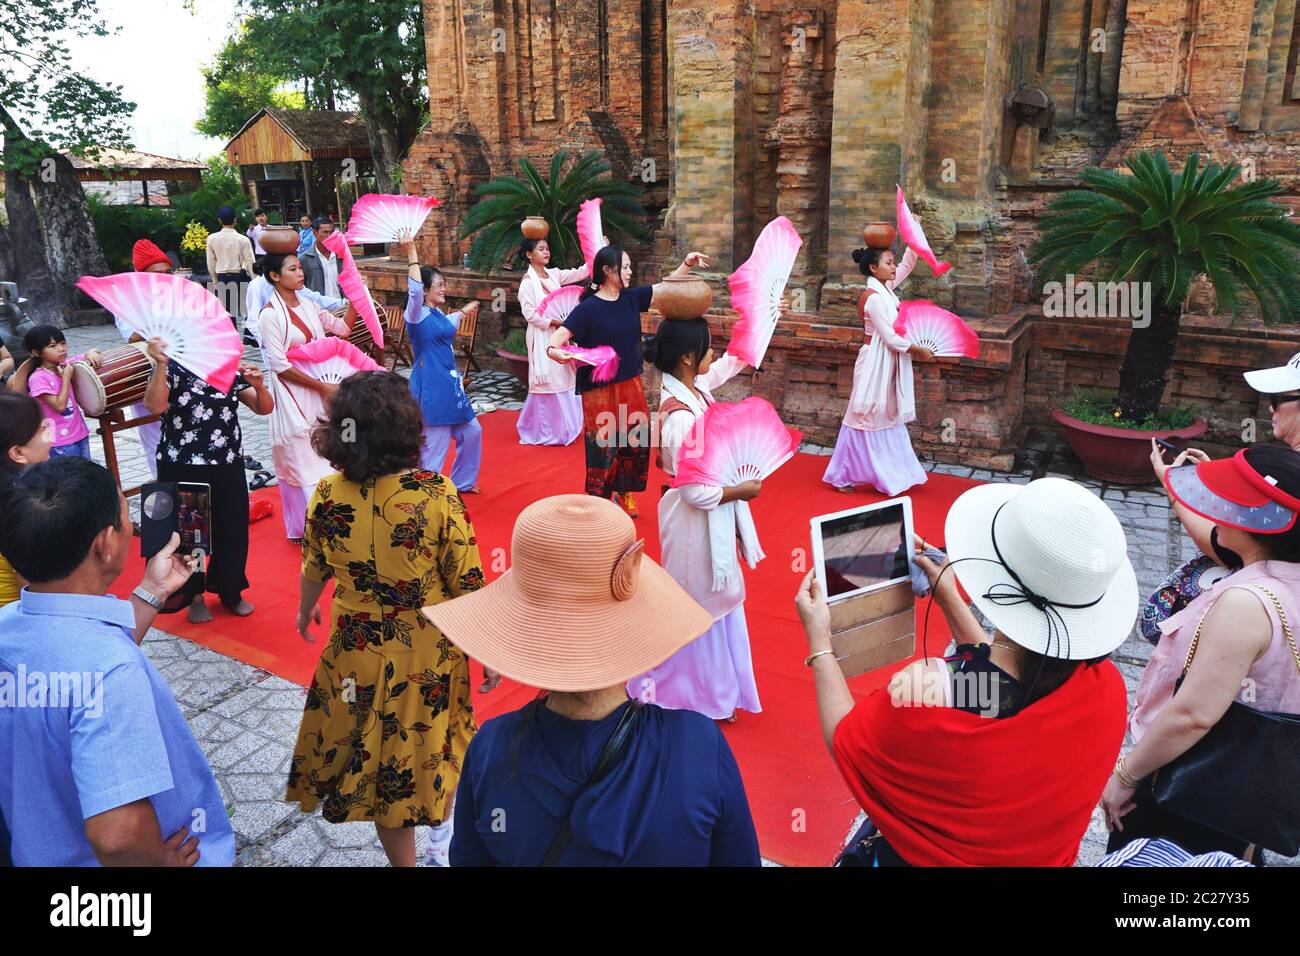 Le 3 juin 2020, de jeunes femmes costumées effectuent une danse ethnique traditionnelle au temple de Cham, à Nha Trang, au Vietnam. Plusieurs touristes se joignent à l'amusement. Banque D'Images